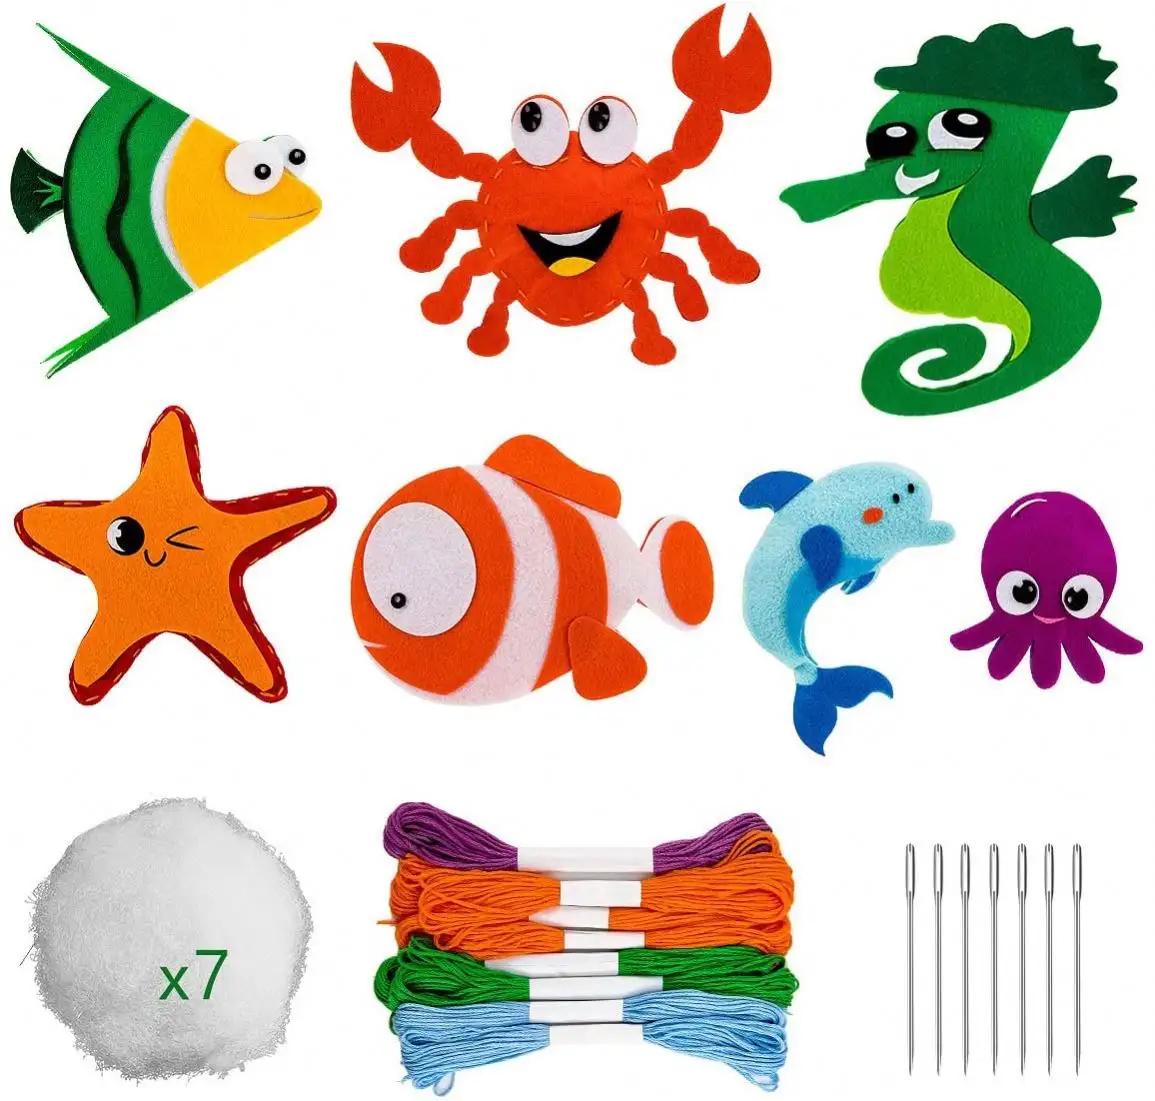 Fun começando fazer o seu próprio oceano sereia animais marinhos feltro diy brinquedo costura kit caixa artesanato para crianças com idades entre 5 +